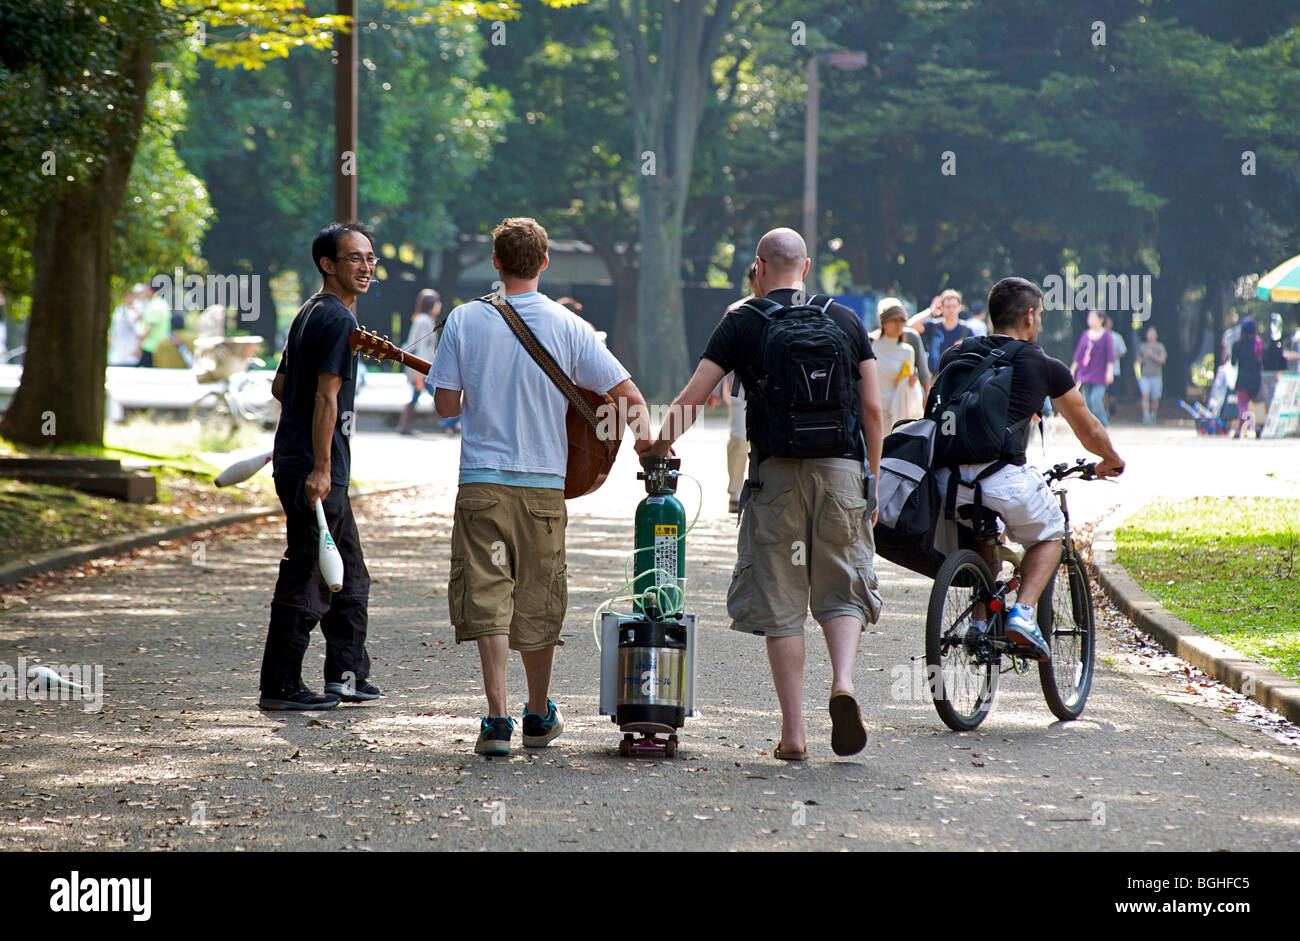 La libre entreprise au Parc Yoyogi, Tokyo, Japon. De la bière à la vente d'une planche à roulettes. Banque D'Images